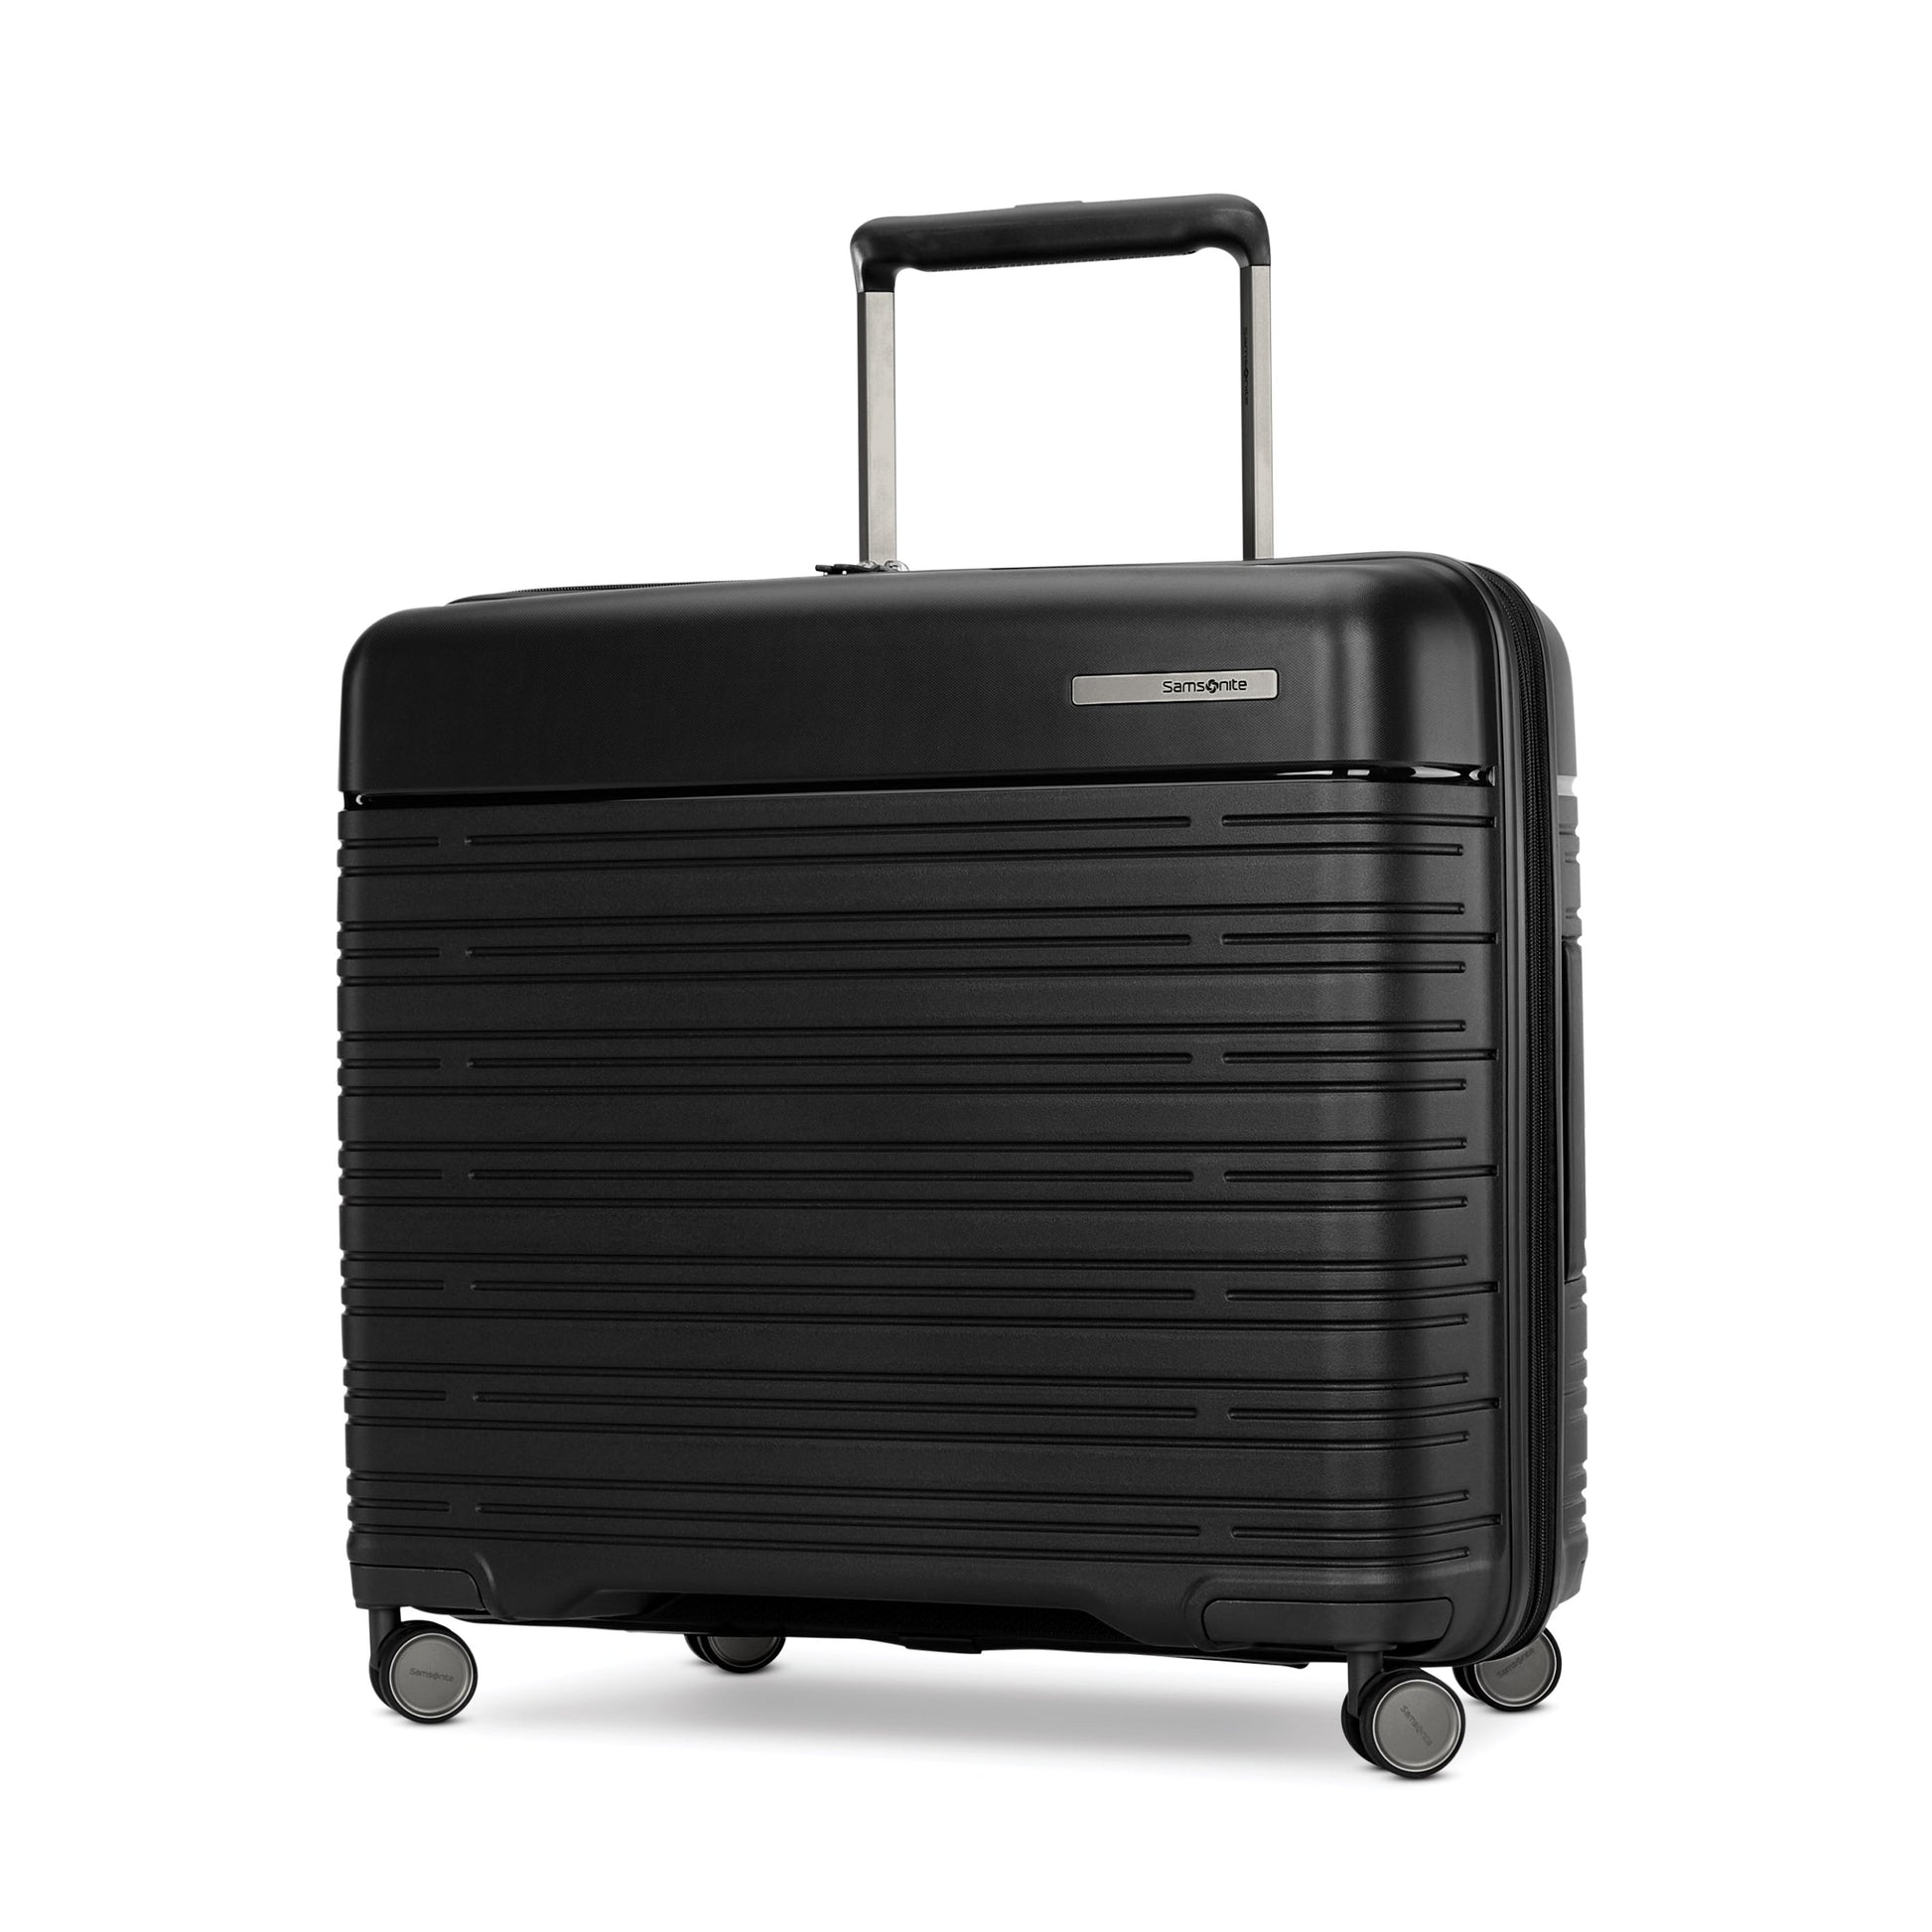 Samsonite Elevation Plus Medium Expandable Glider Luggage - Triple Black